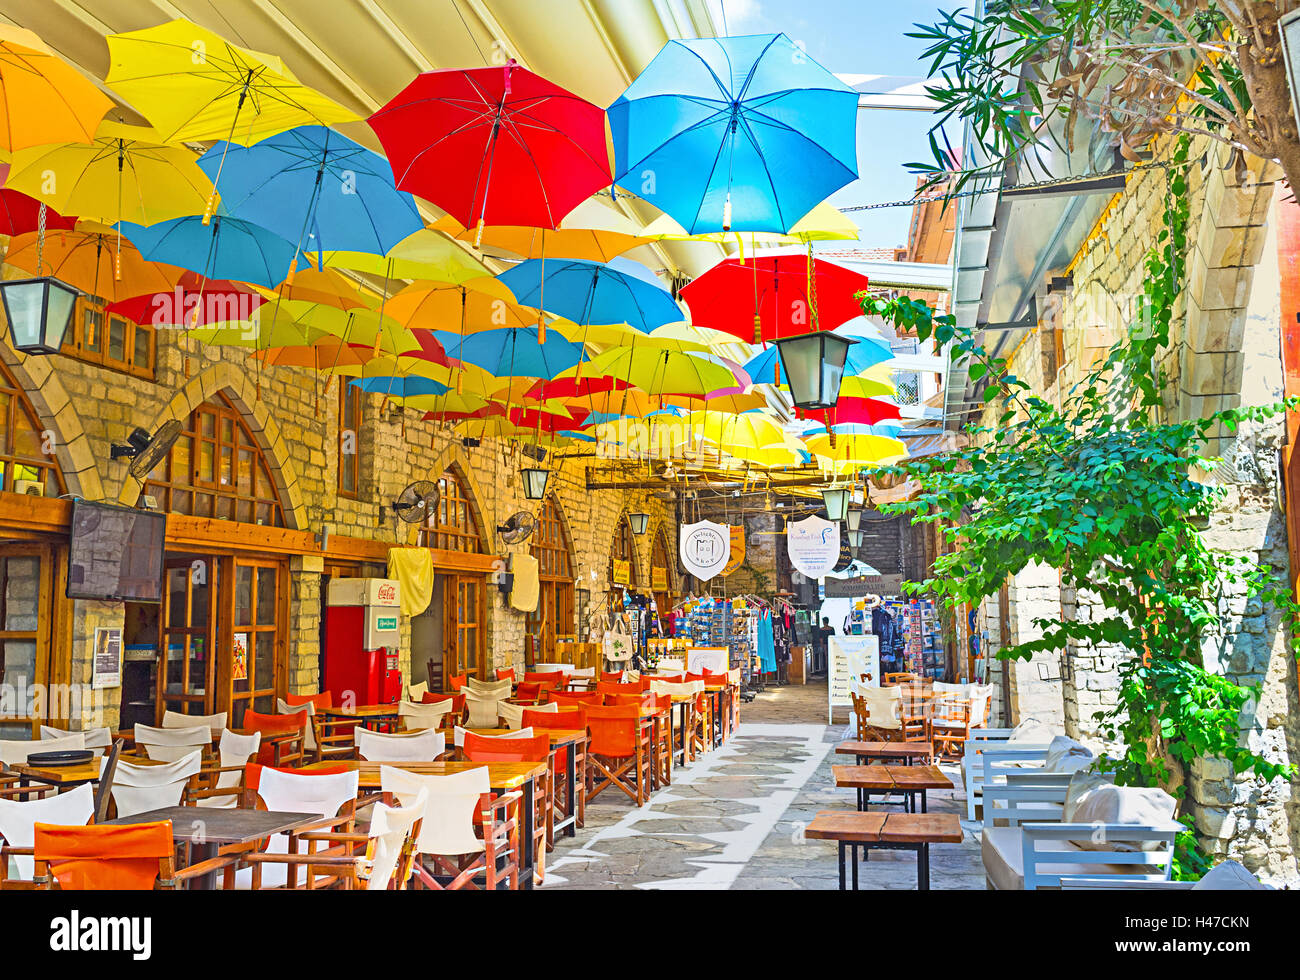 Viele bunte Schirme schmücken das Segeln der indoor Passage in der  Altstadt, Limassol, Zypern Stockfotografie - Alamy